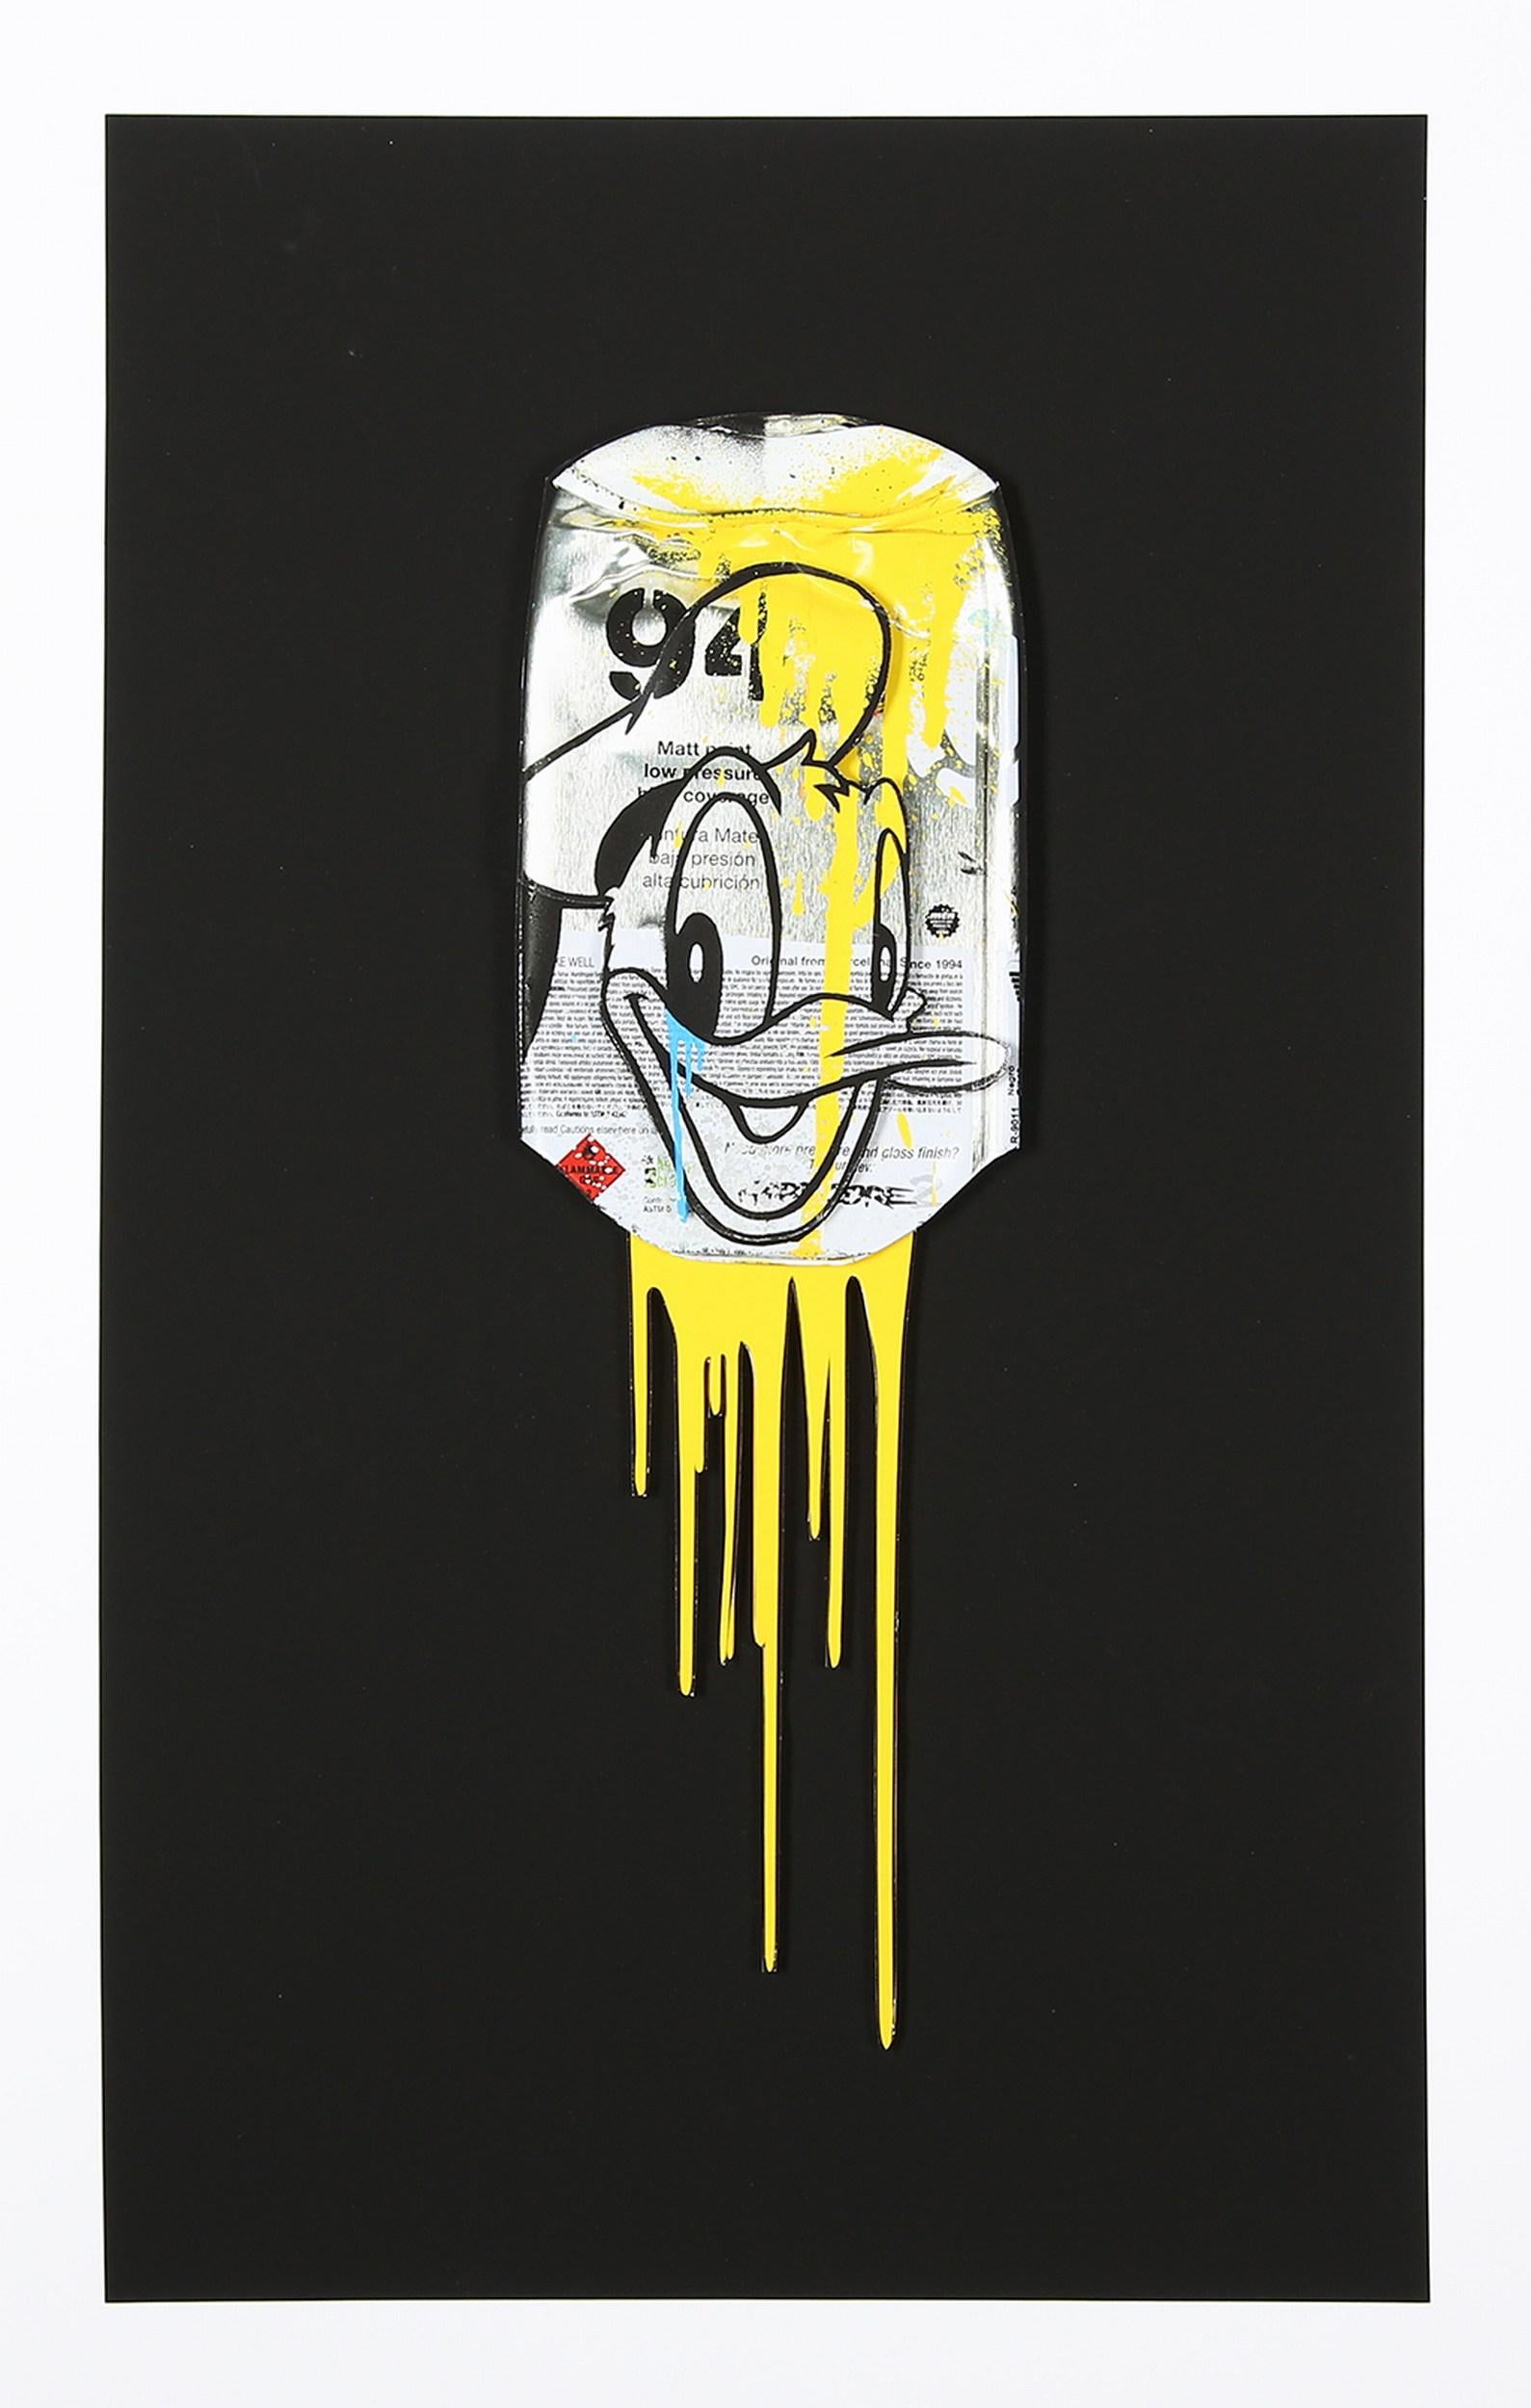 Ben Allen Figurative Print - Donald Montana (Yellow) (Pop Art, Street Art, Disney)